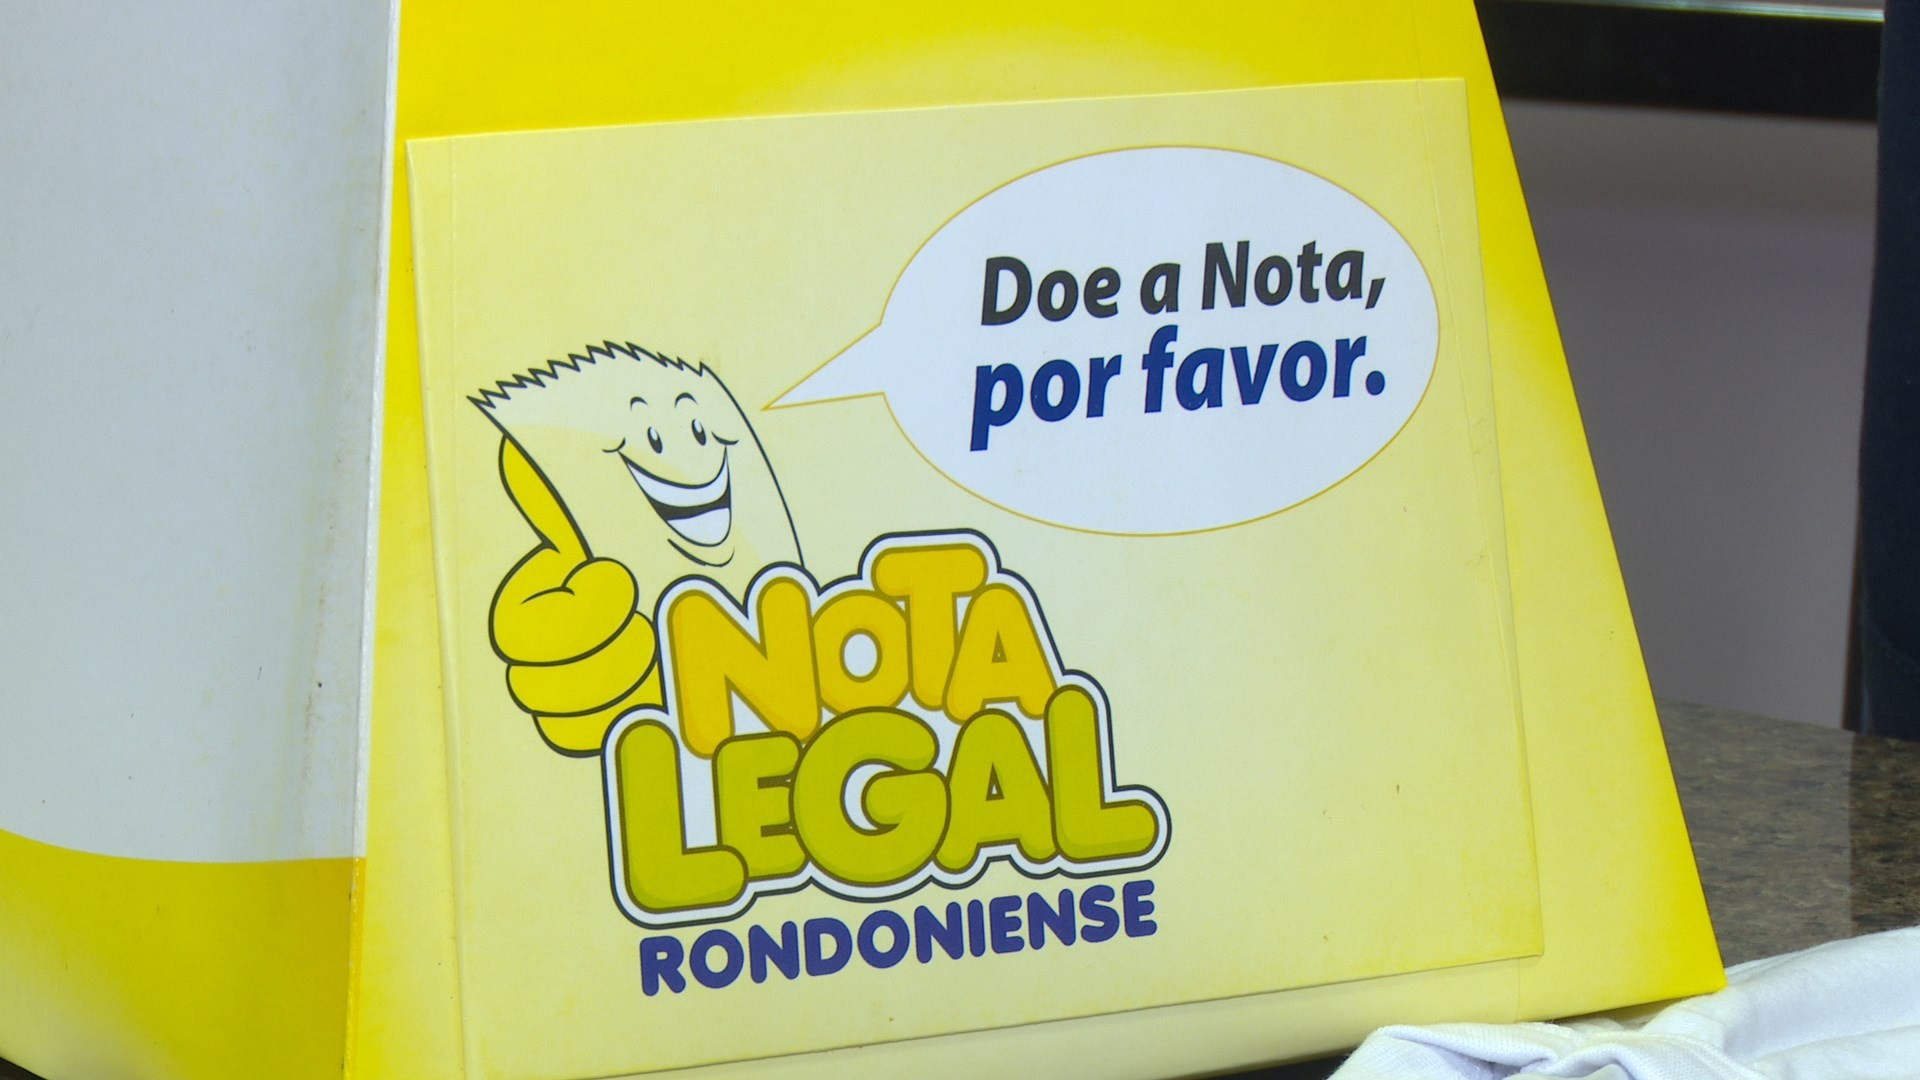 Nota Legal rondoniense sorteia R$ 50 mil em prêmios nesta quinta-feira (23)